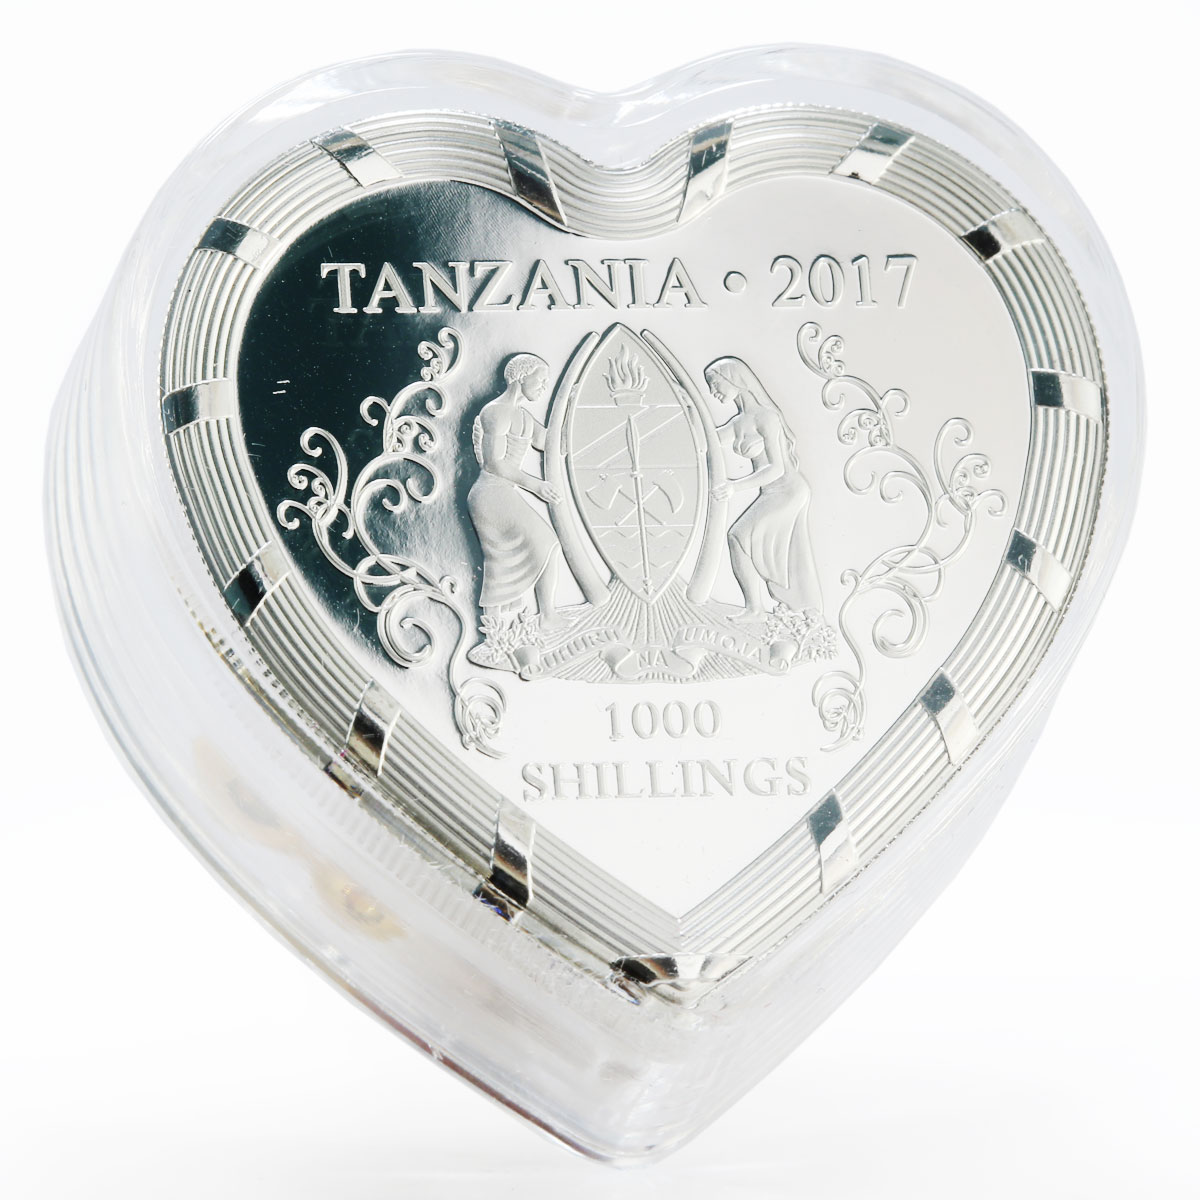 Tanzania 1000 shillings Love is Precious proof silver coin 2017